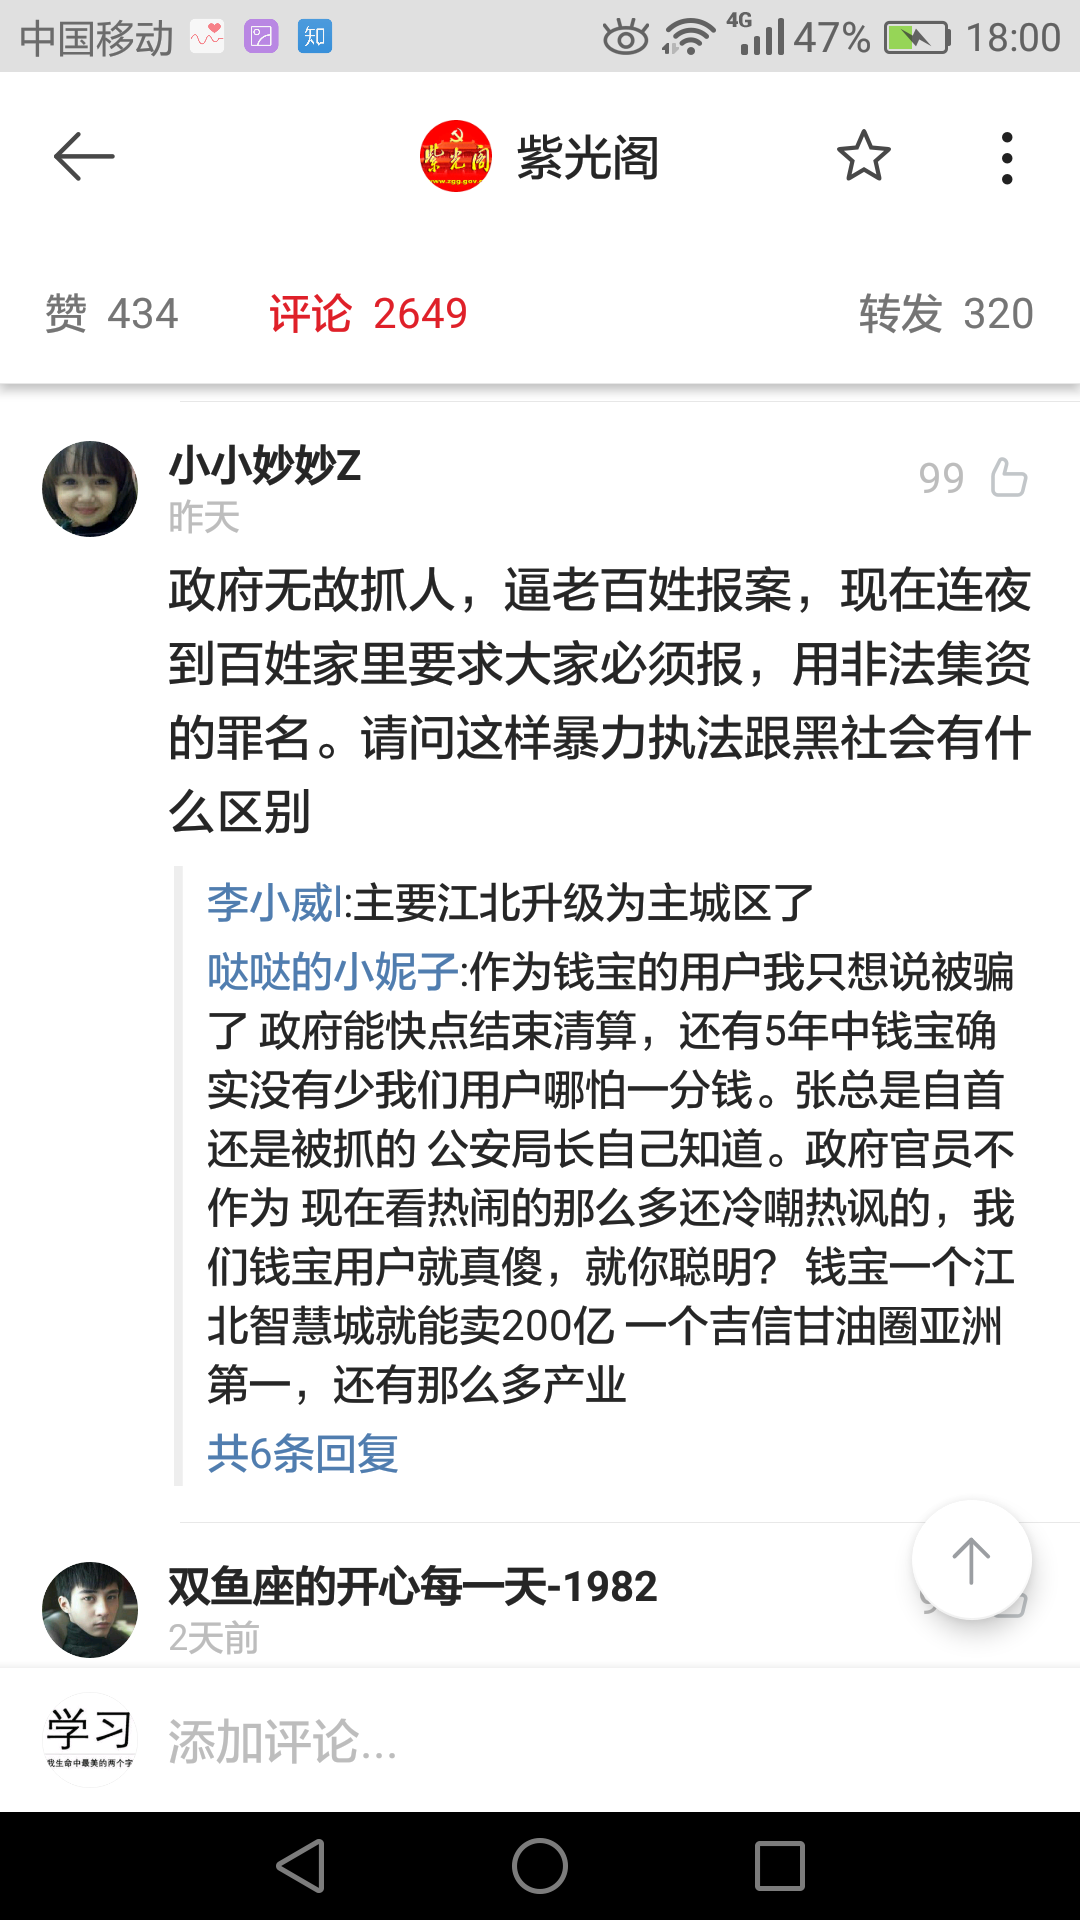 如何看待平安南京 12 月 27 日发布的微博:钱宝